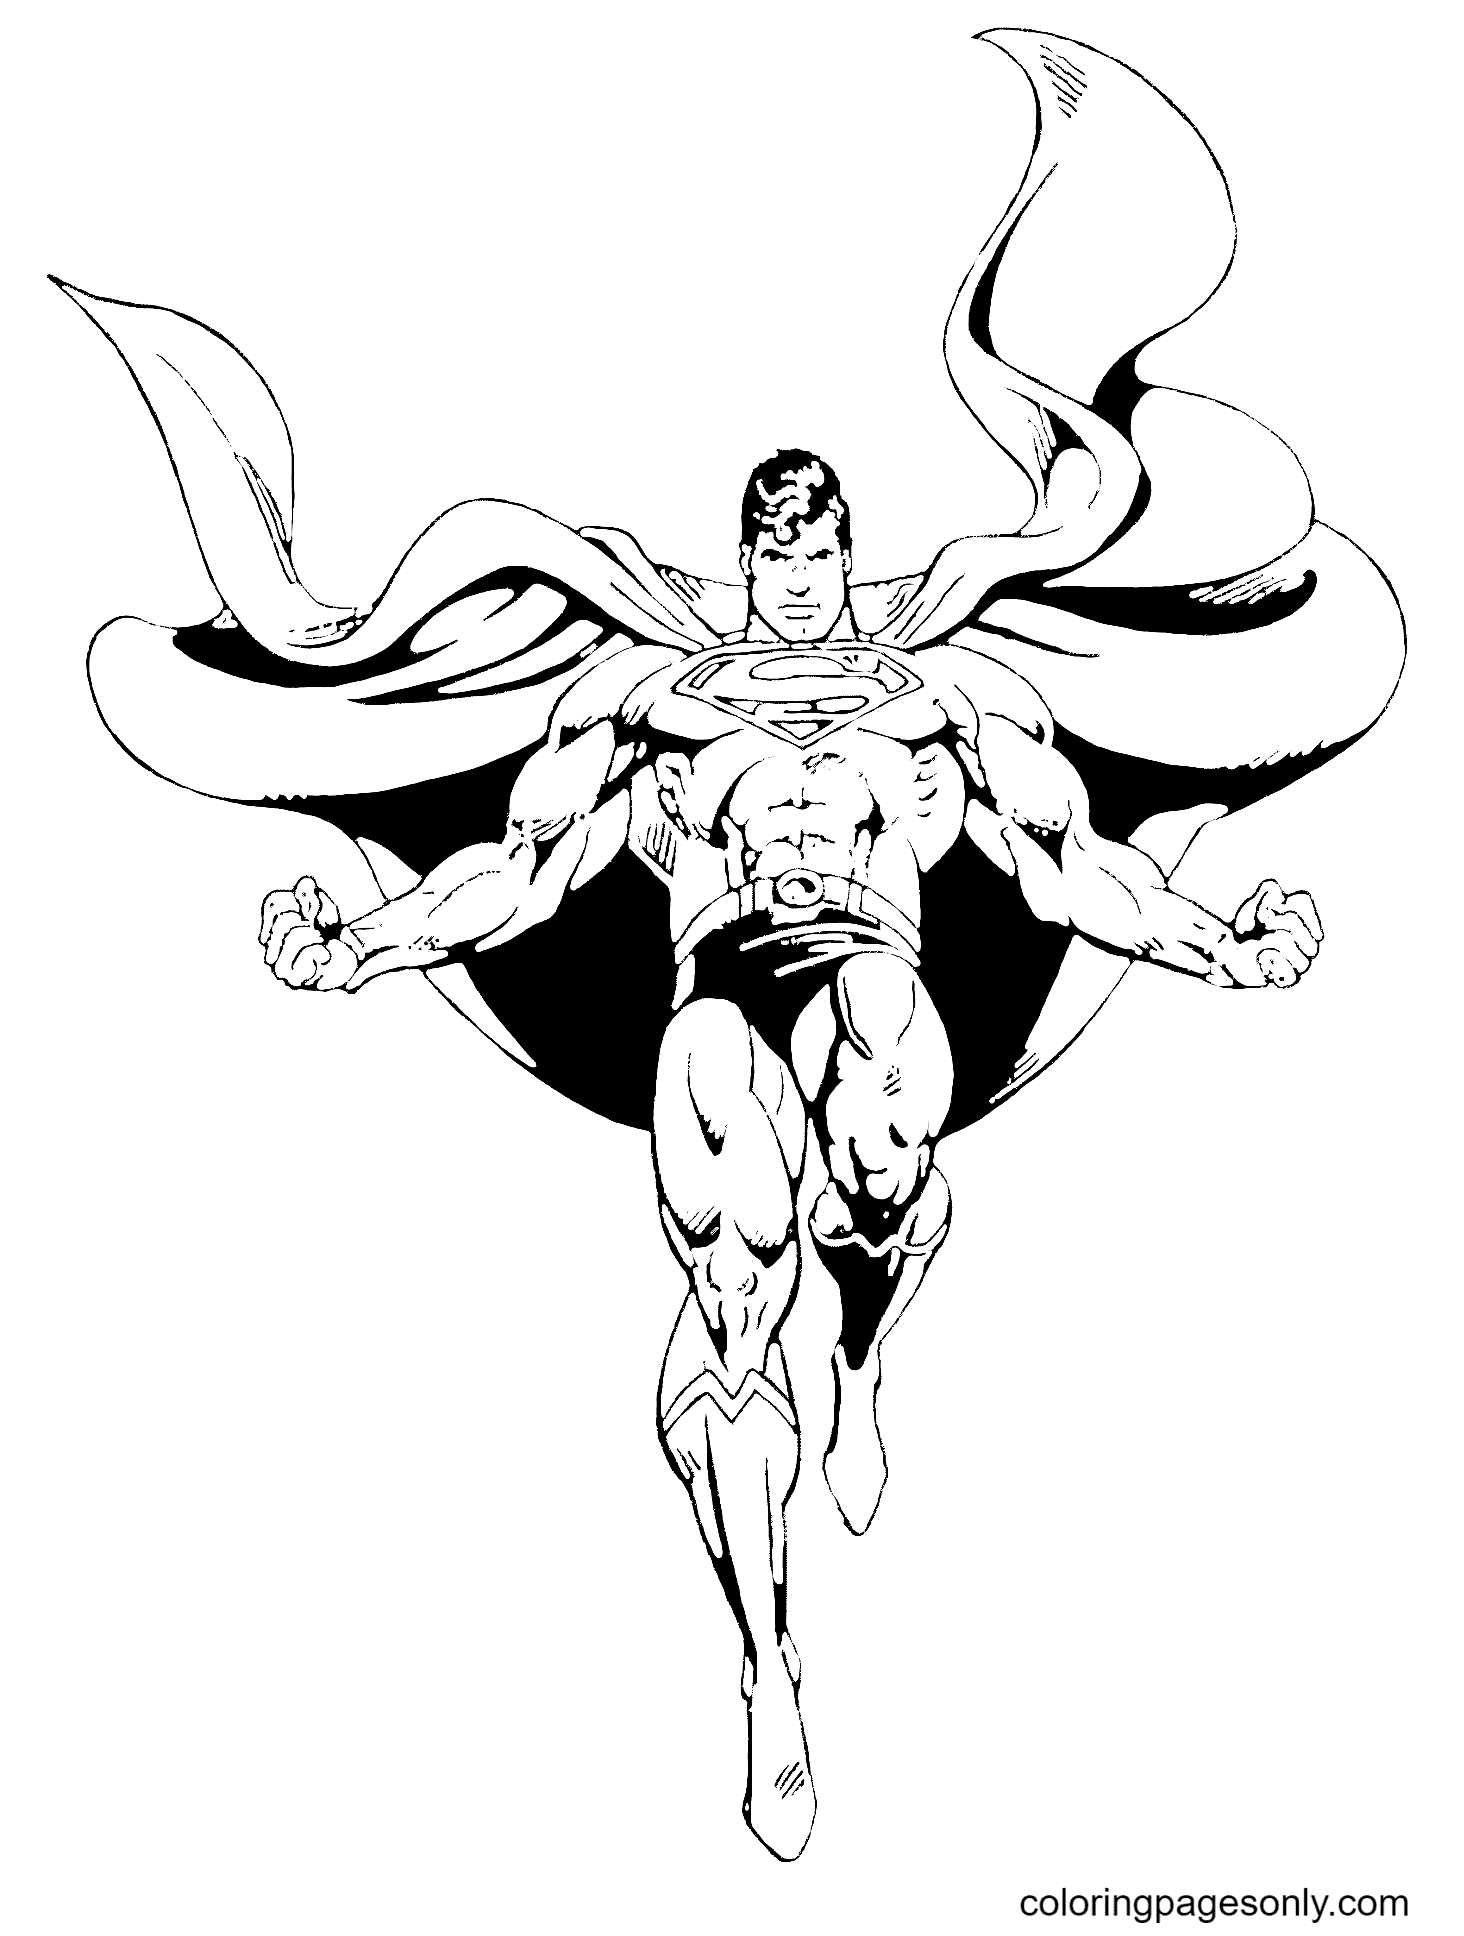 Супермен черно белый